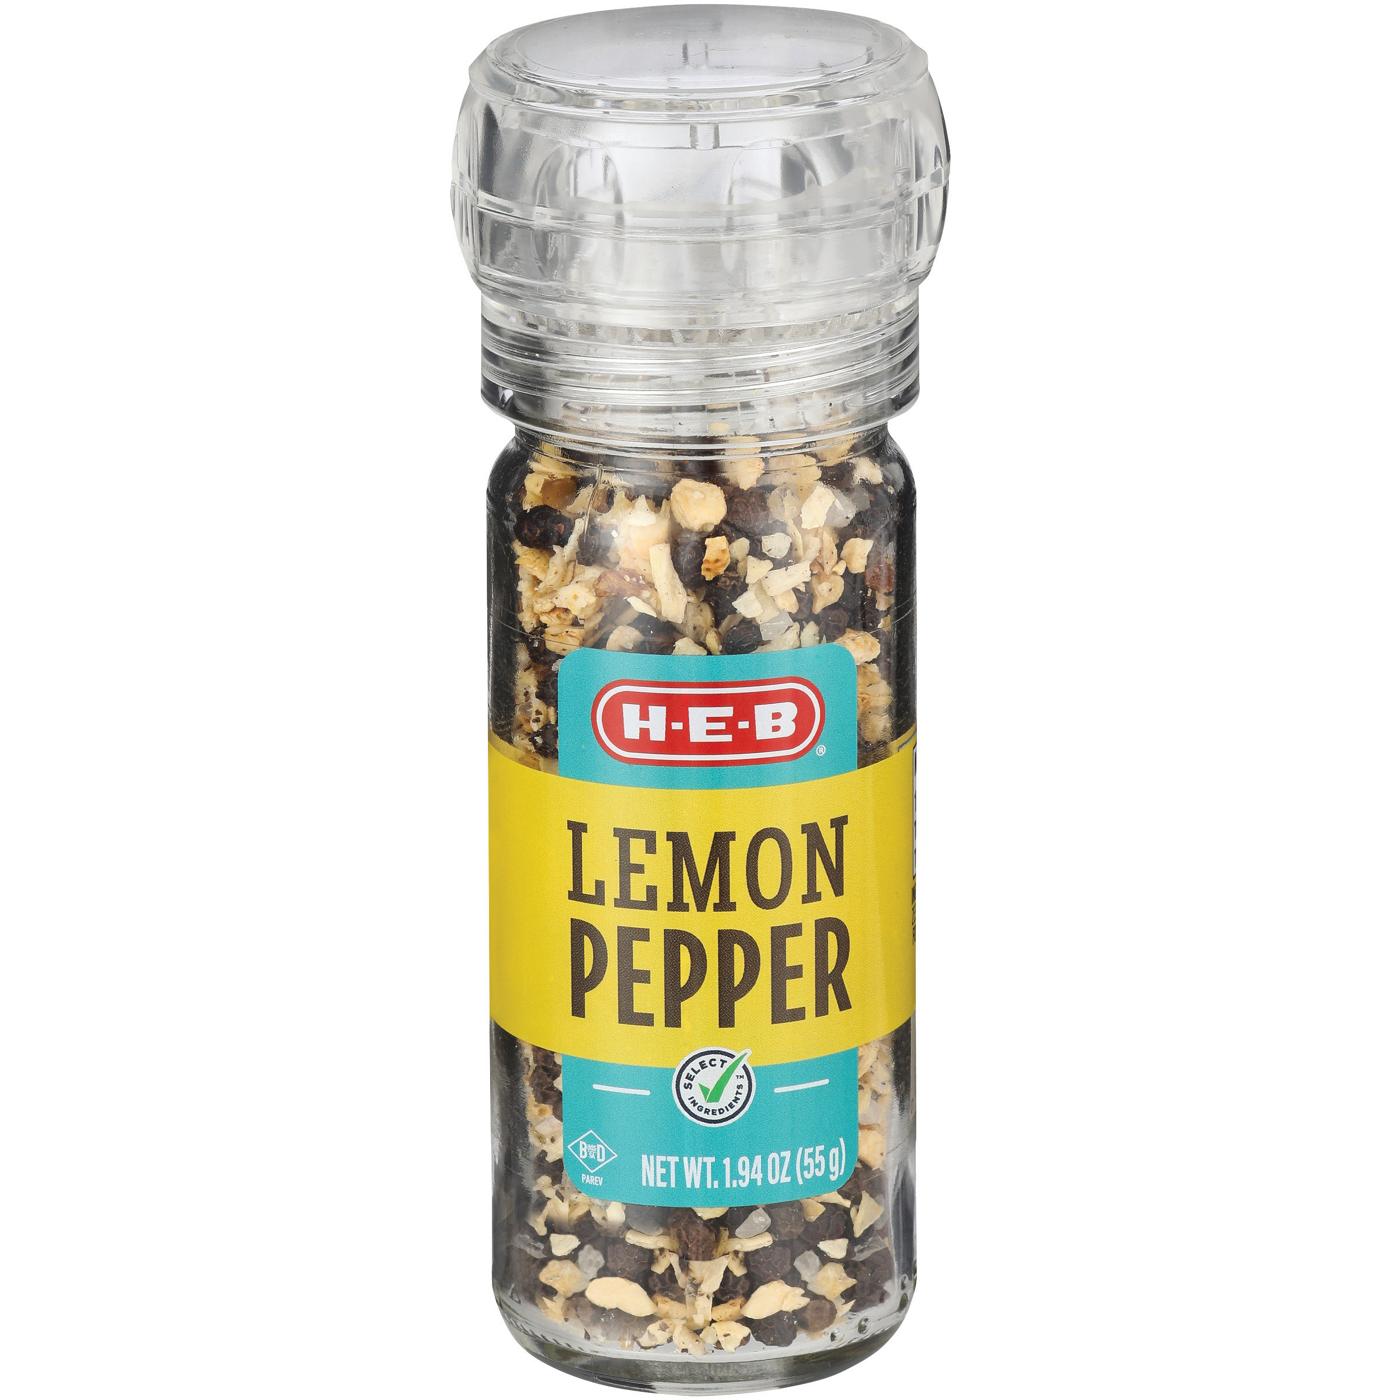 H-E-B Lemon Pepper Grinder; image 2 of 2